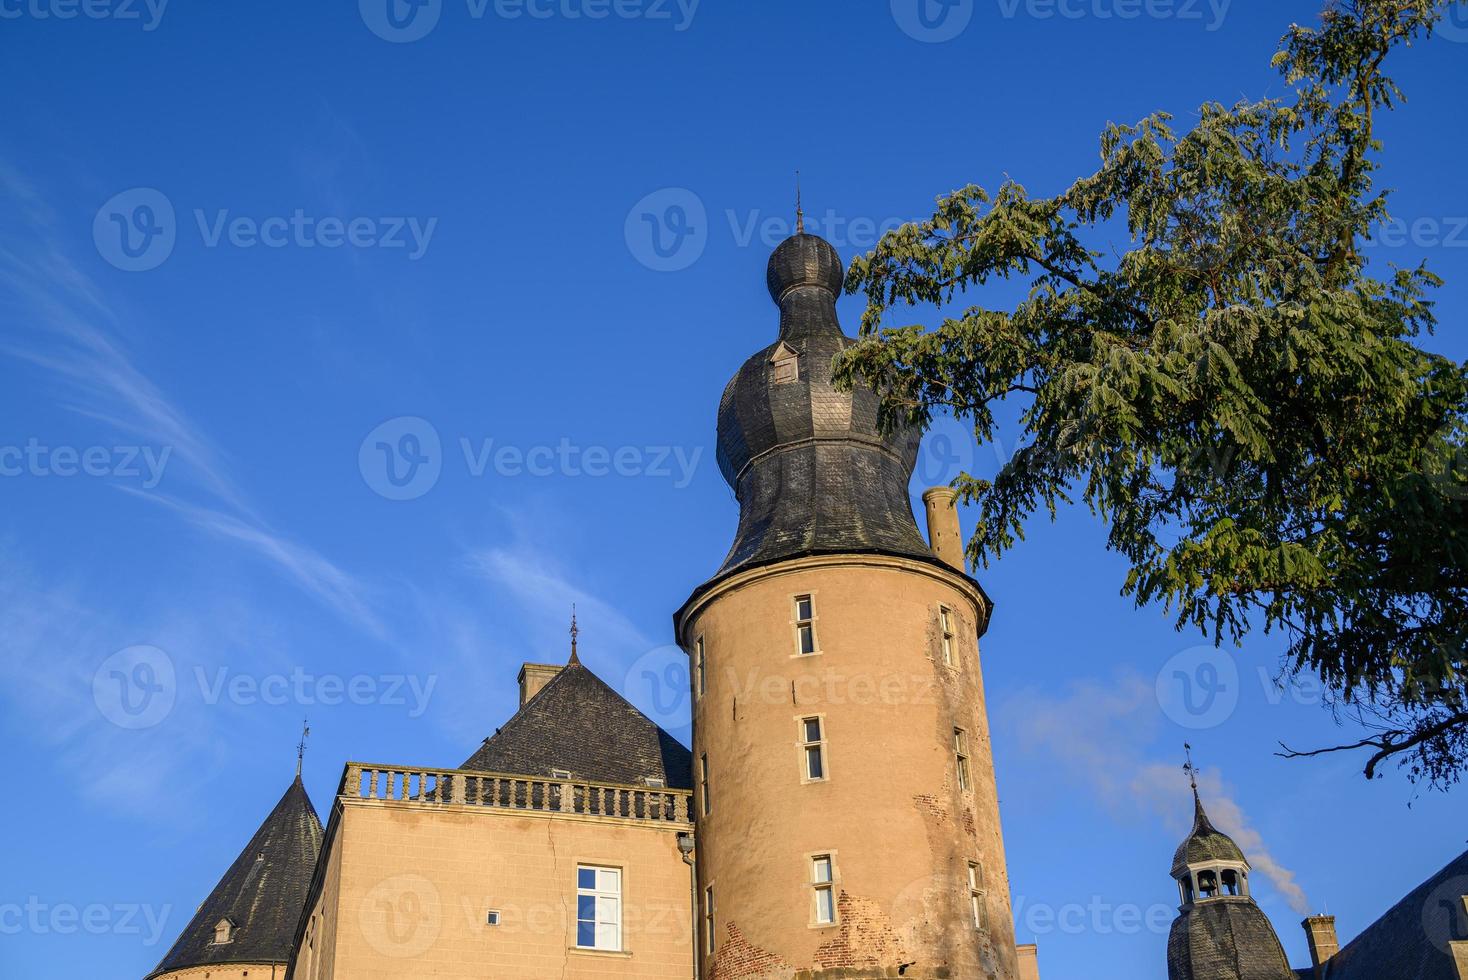 automne dans un château en westphalie photo